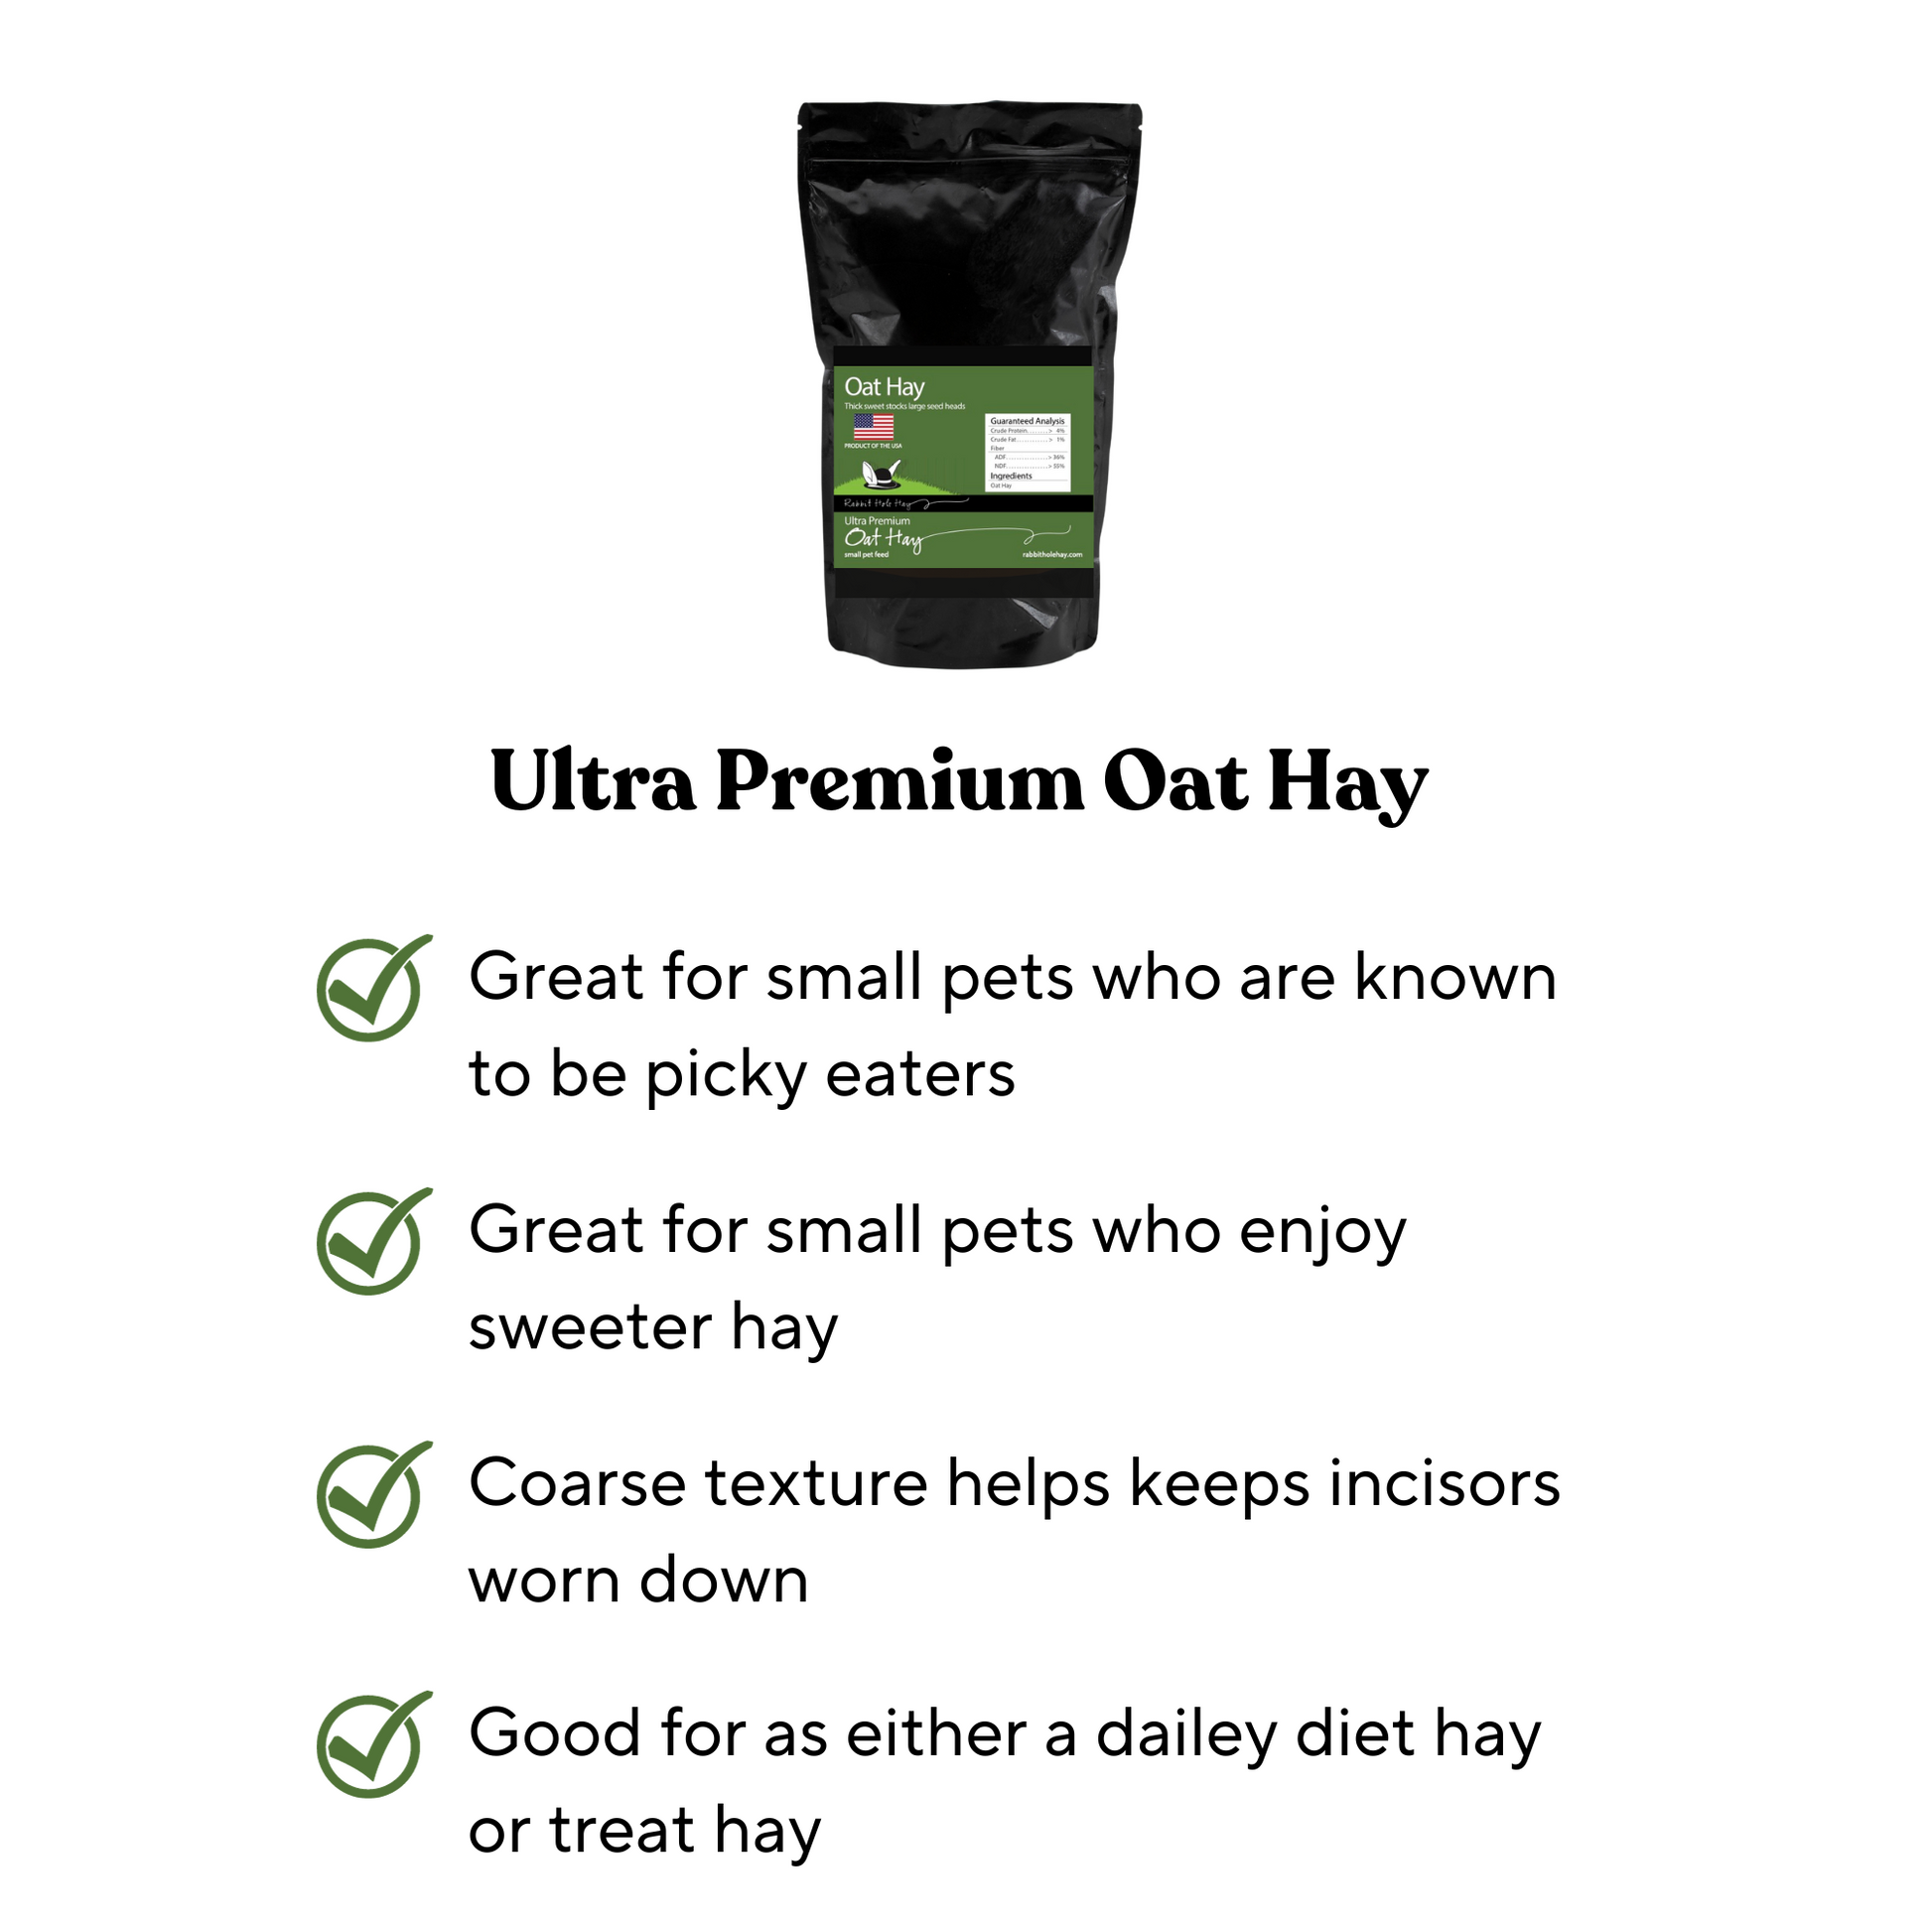 Ultra Premium Oat Hay Benefits